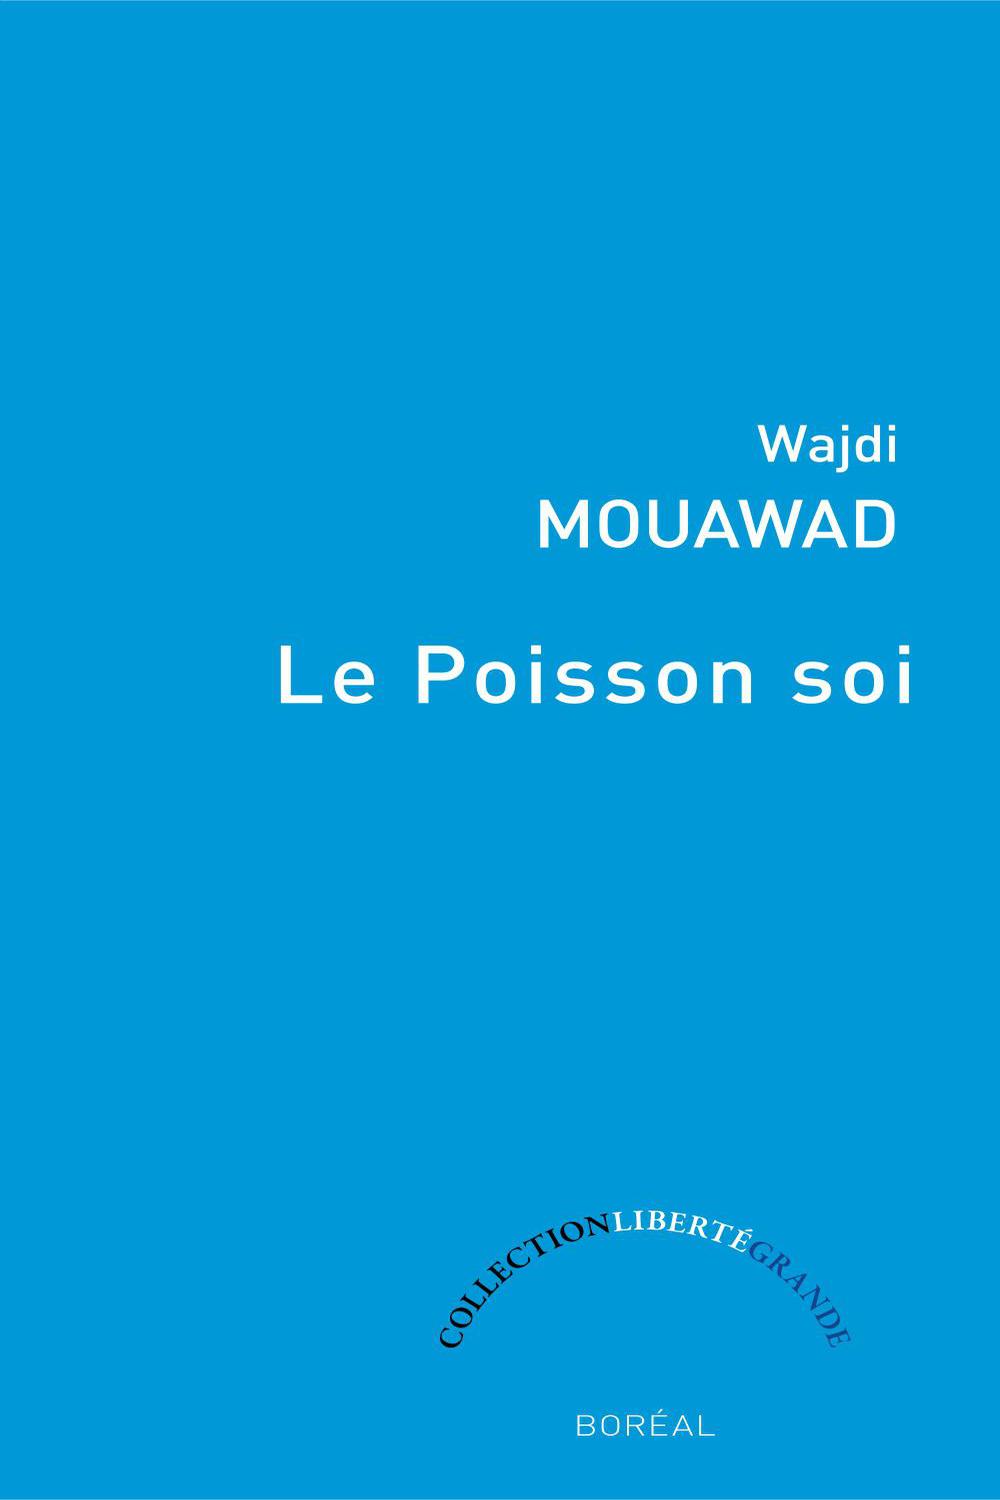 Le Poisson soi - Wajdi Mouawad